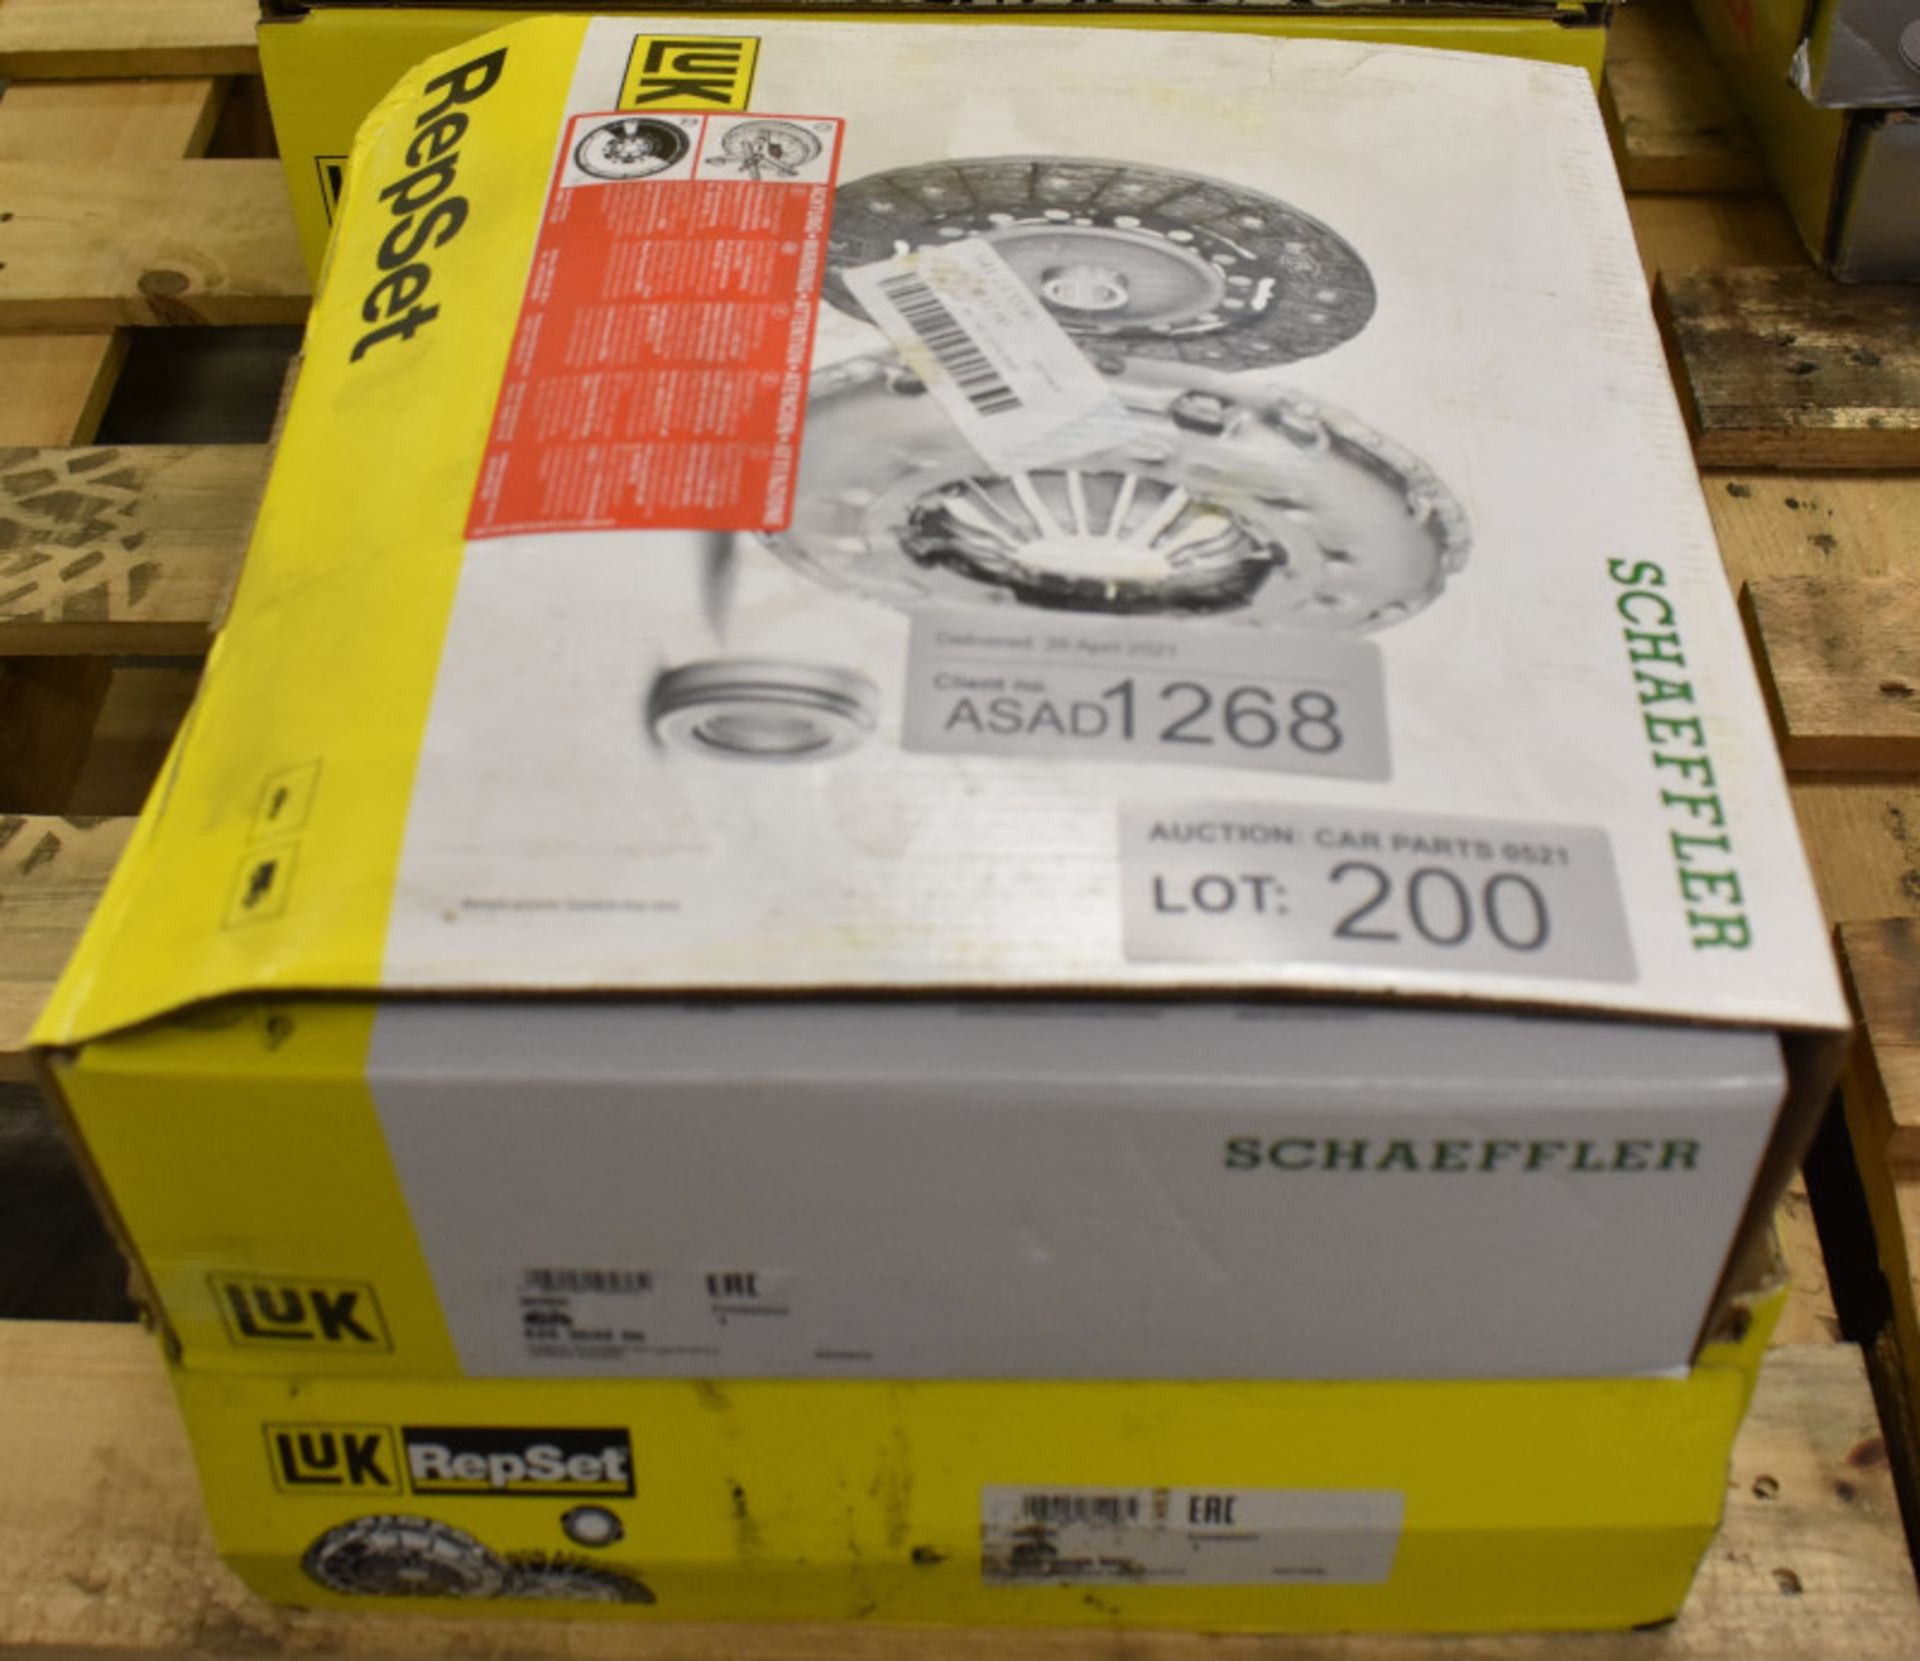 2x LUK Repset Clutch Kits (1x Schaeffler) - Models - 626 3032 00 & 625 3095 00